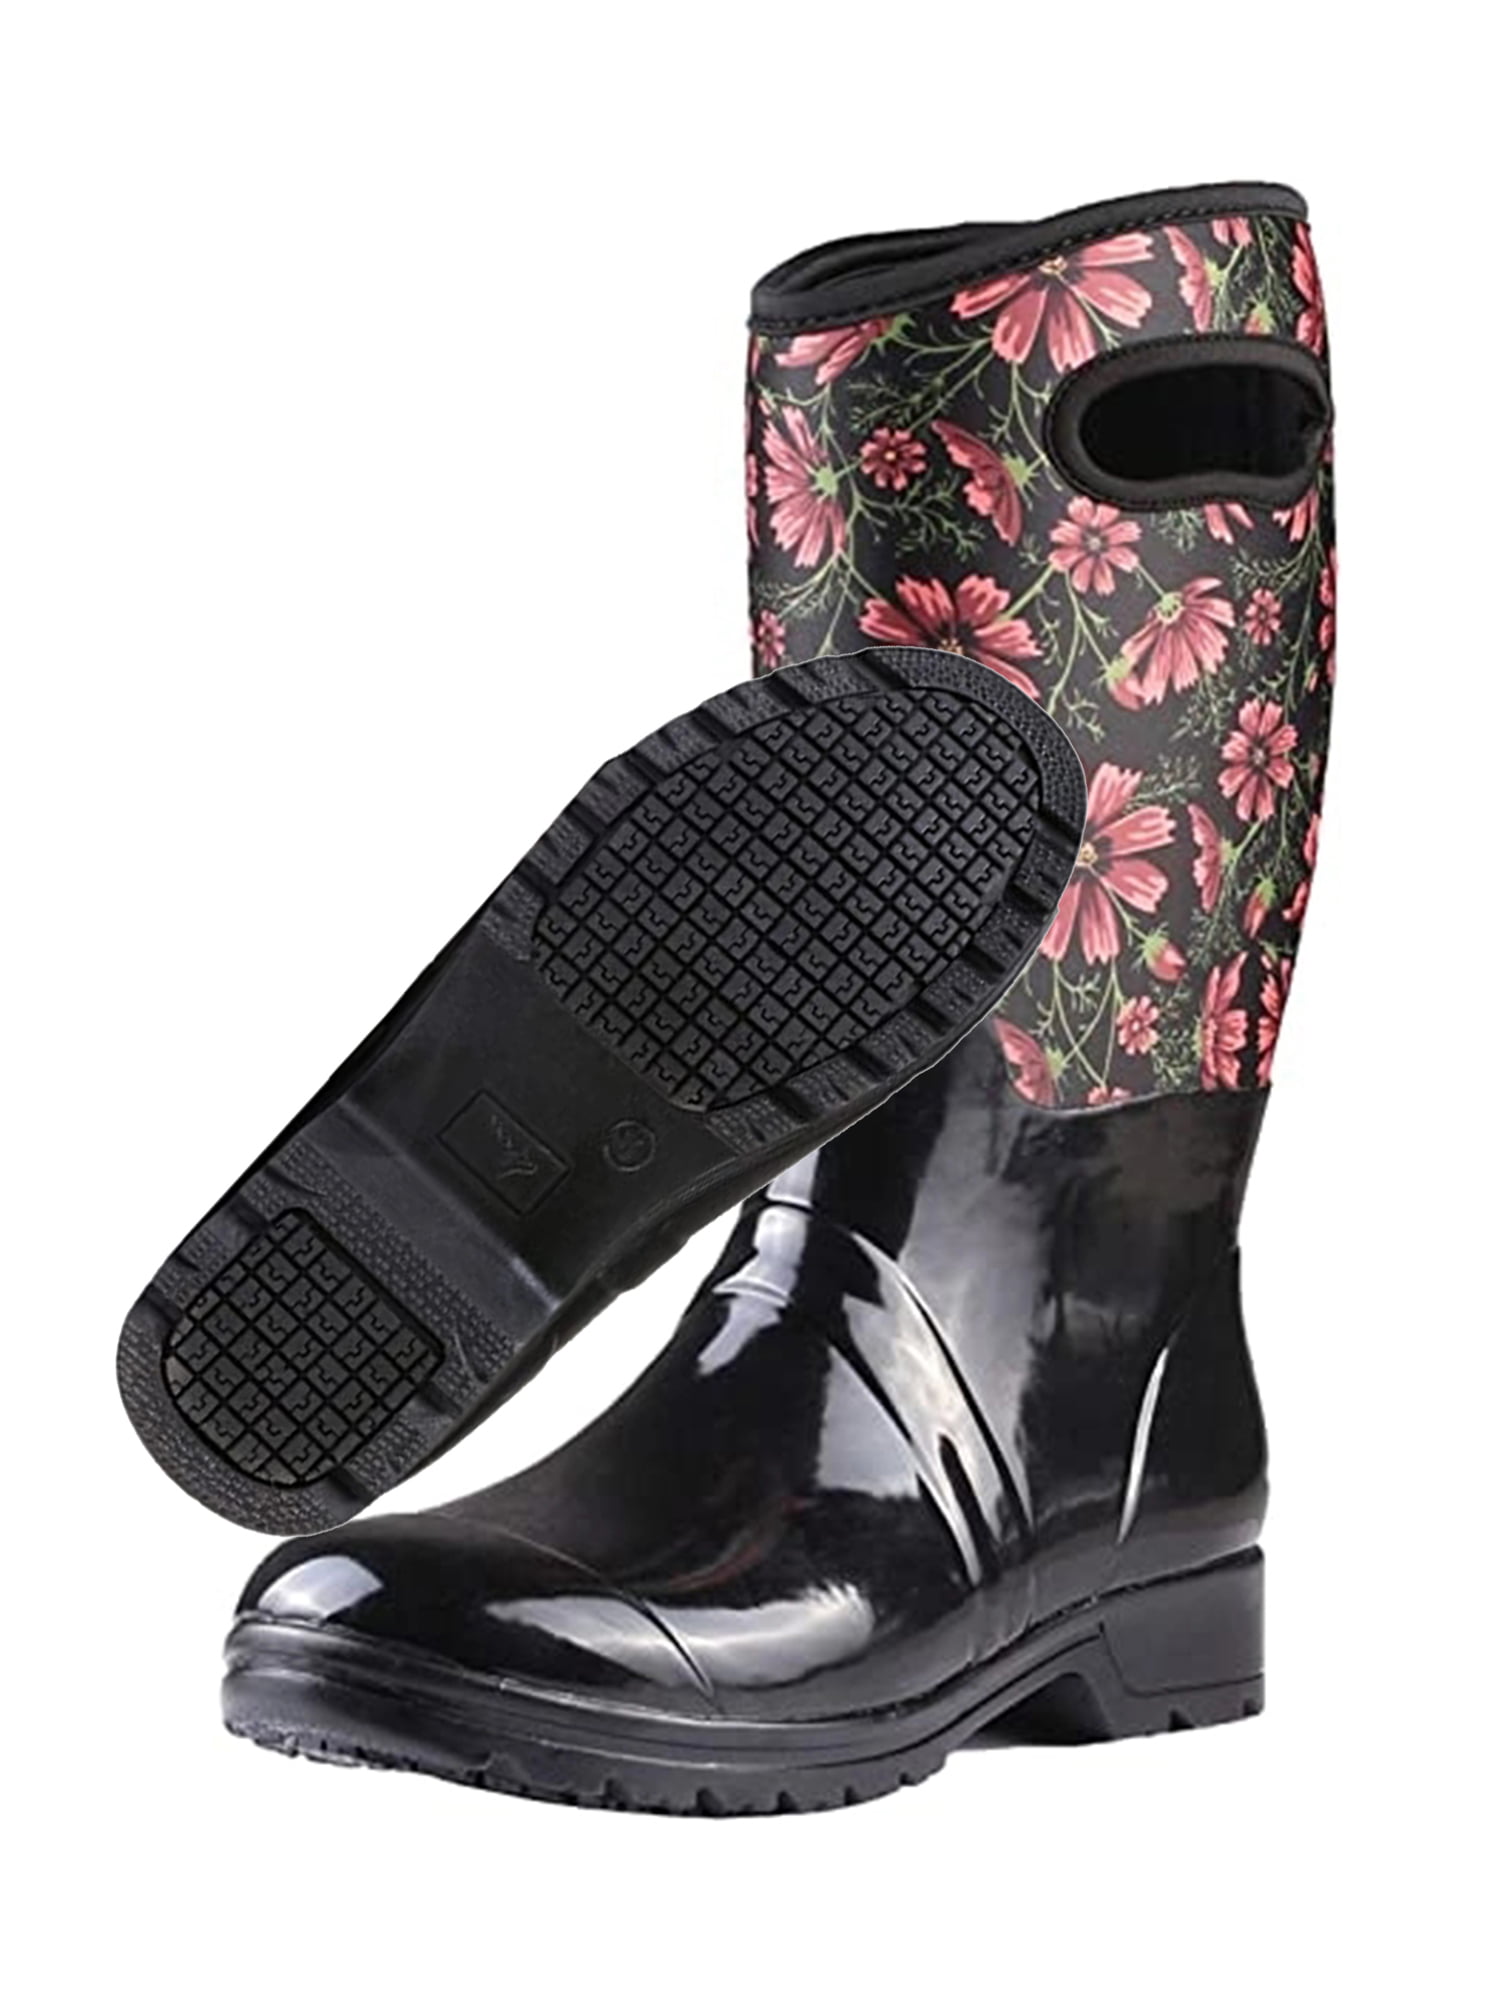 Own Shoe Neoprene Rubber Waterproof Rain Boots For Women Mid Calf